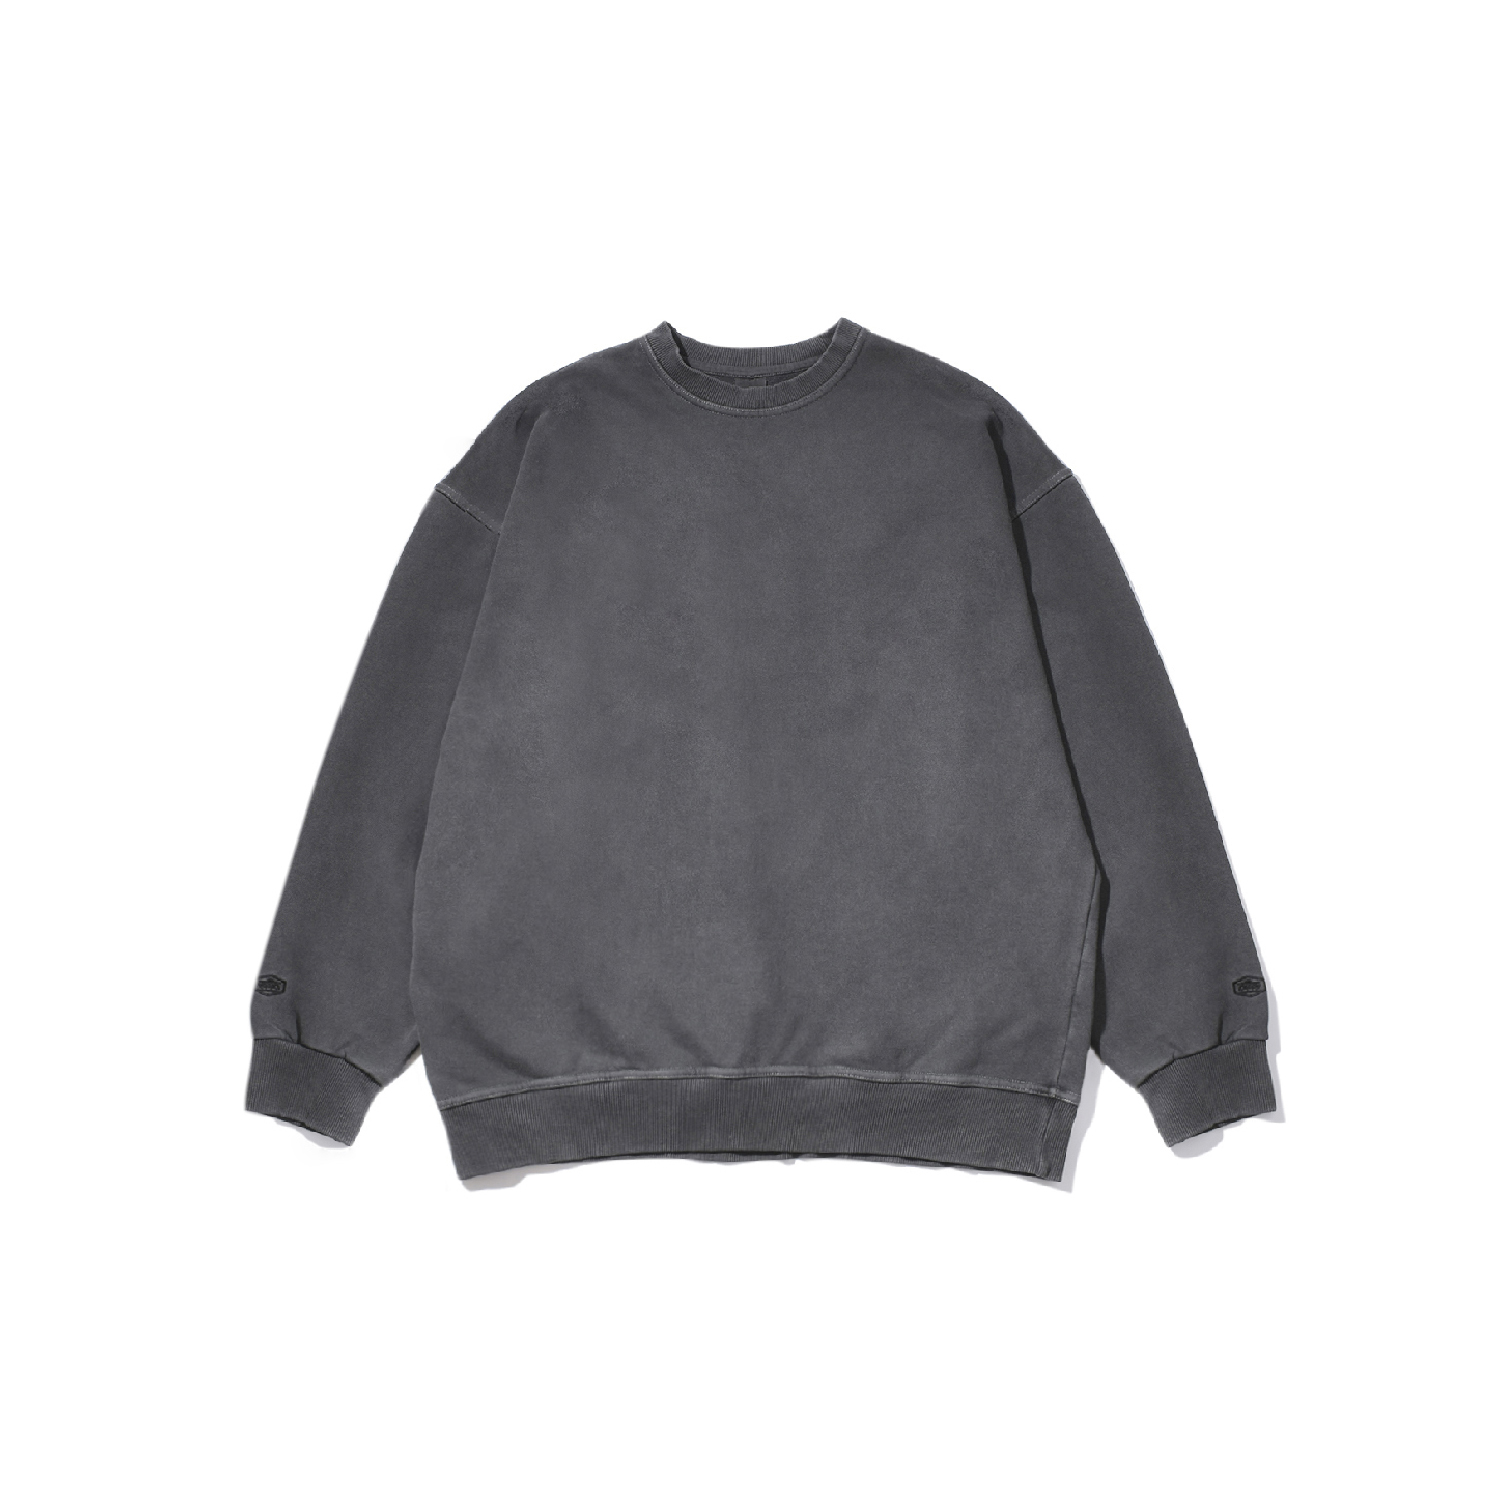 Pigment sweat shirt dark gray